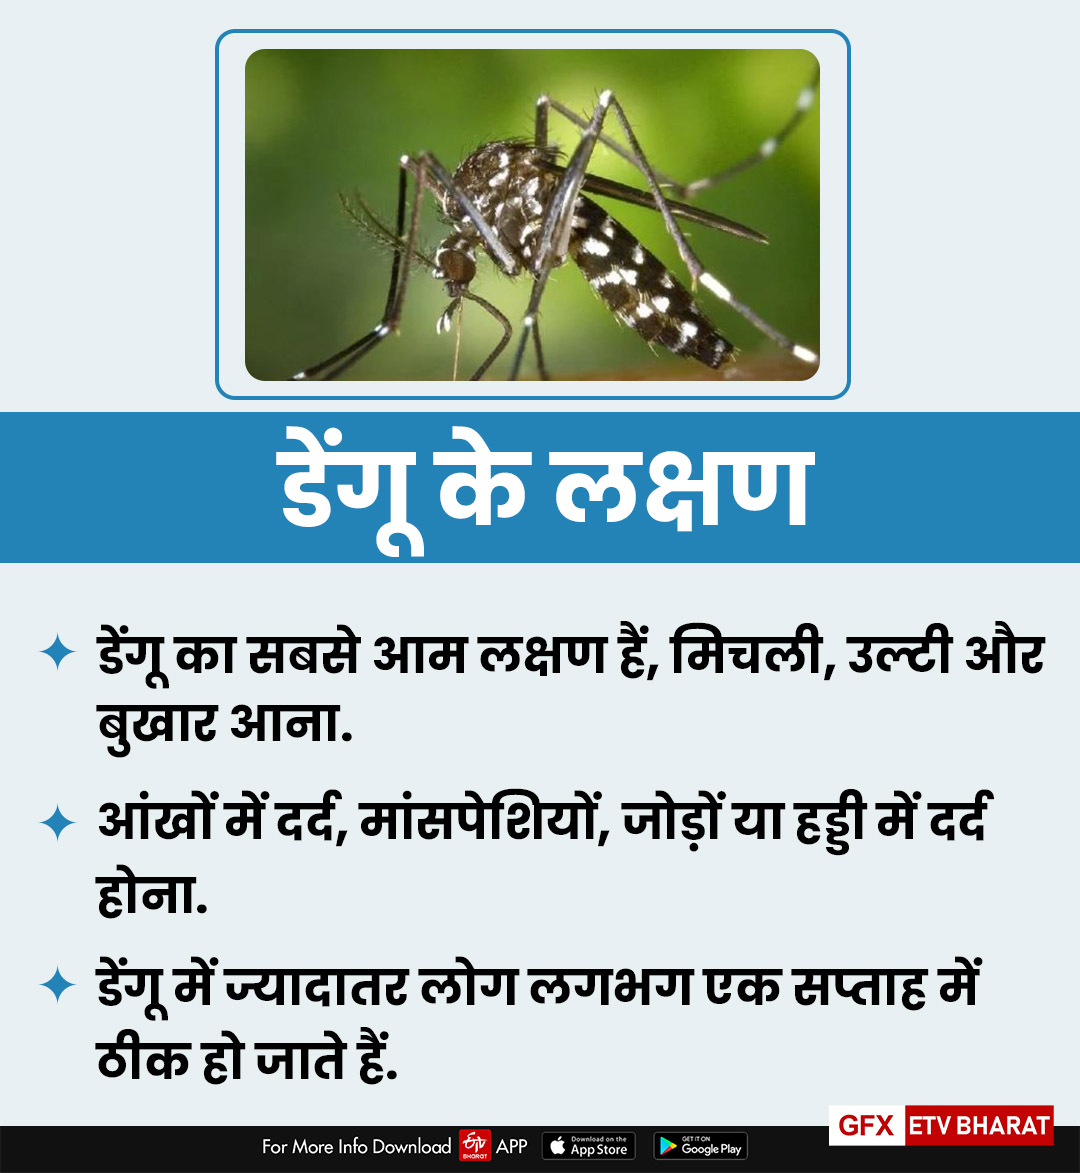 ये है डेंगू के लक्षण